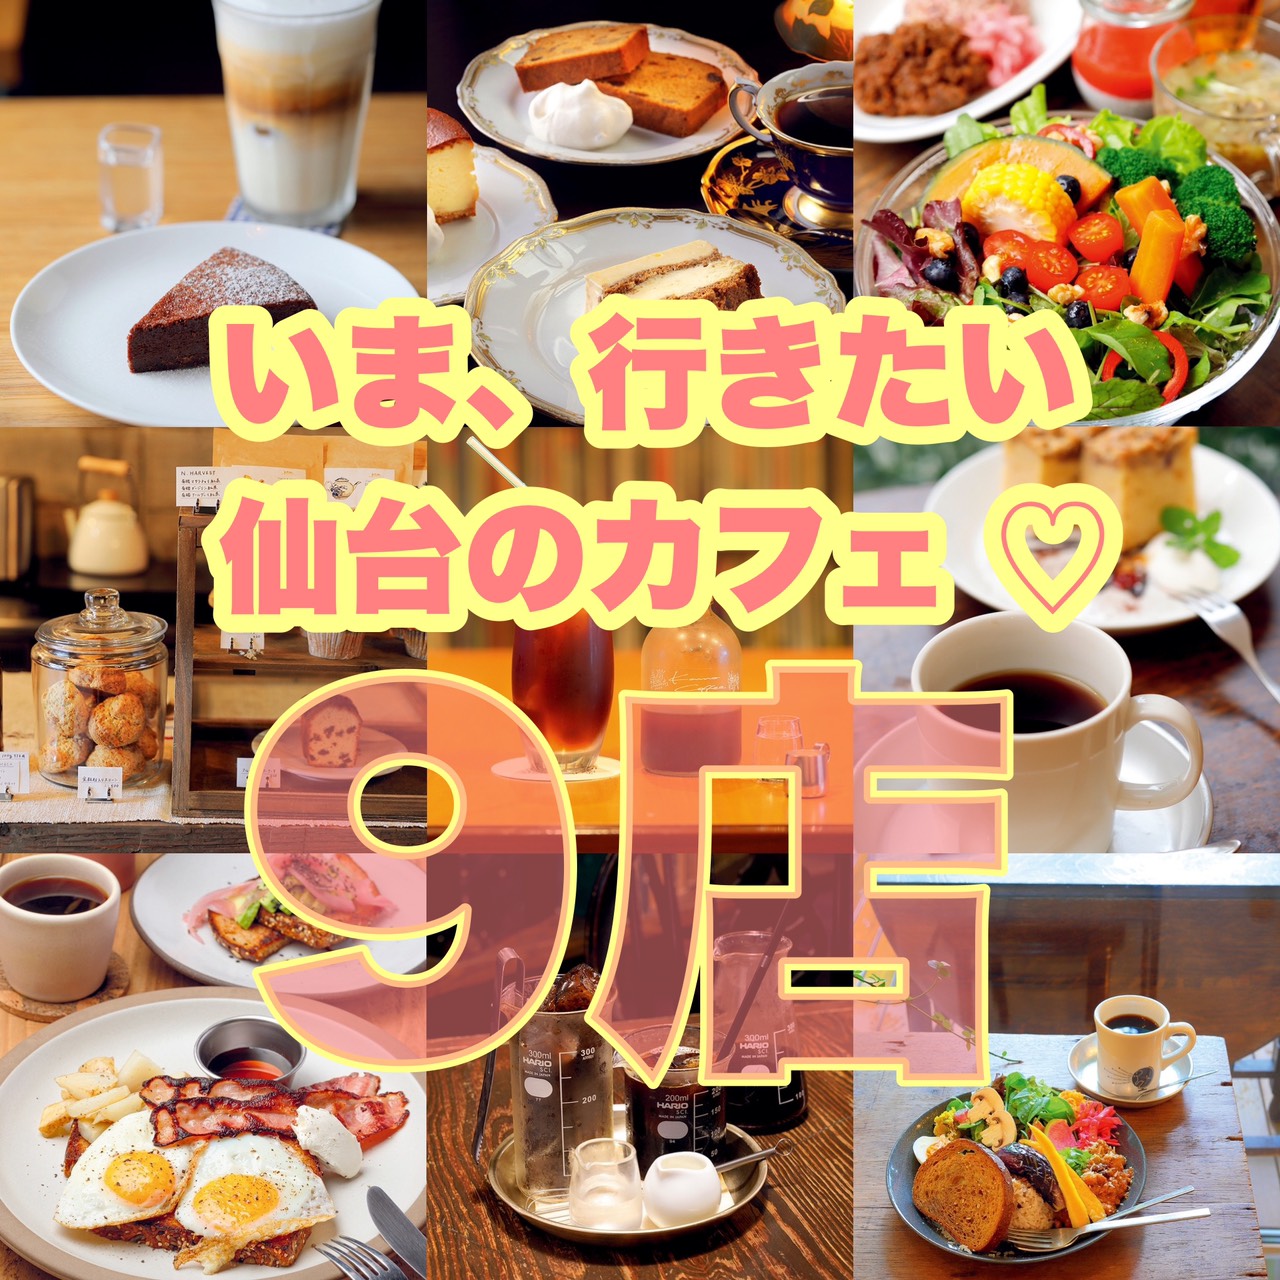 必見 いま 行きたい 仙台のカフェ 9店 日刊せんだいタウン情報s Style Web